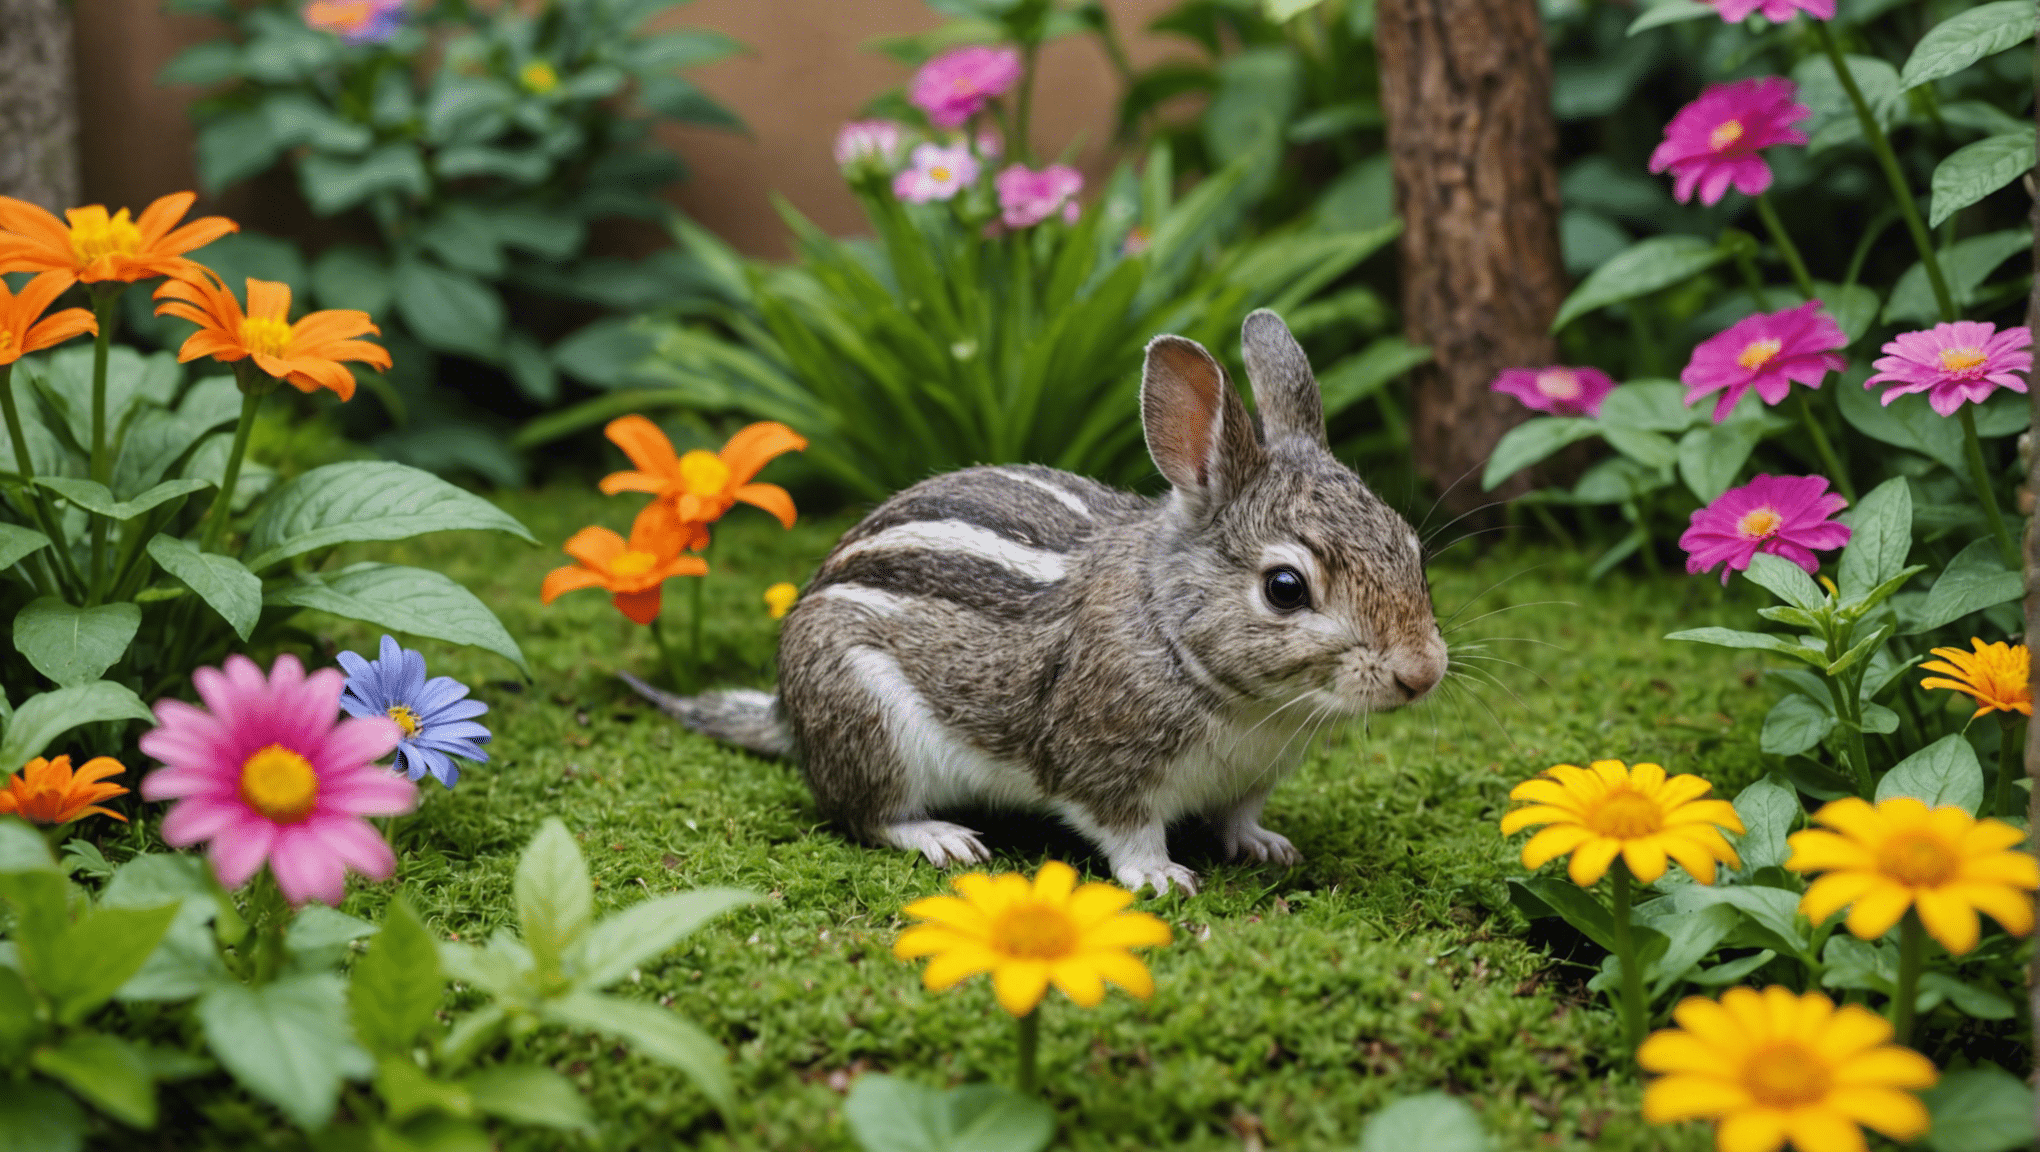 découvrez la gamme diversifiée de petits animaux qui habitent votre jardin, des oiseaux colorés aux écureuils espiègles et aux insectes fascinants.